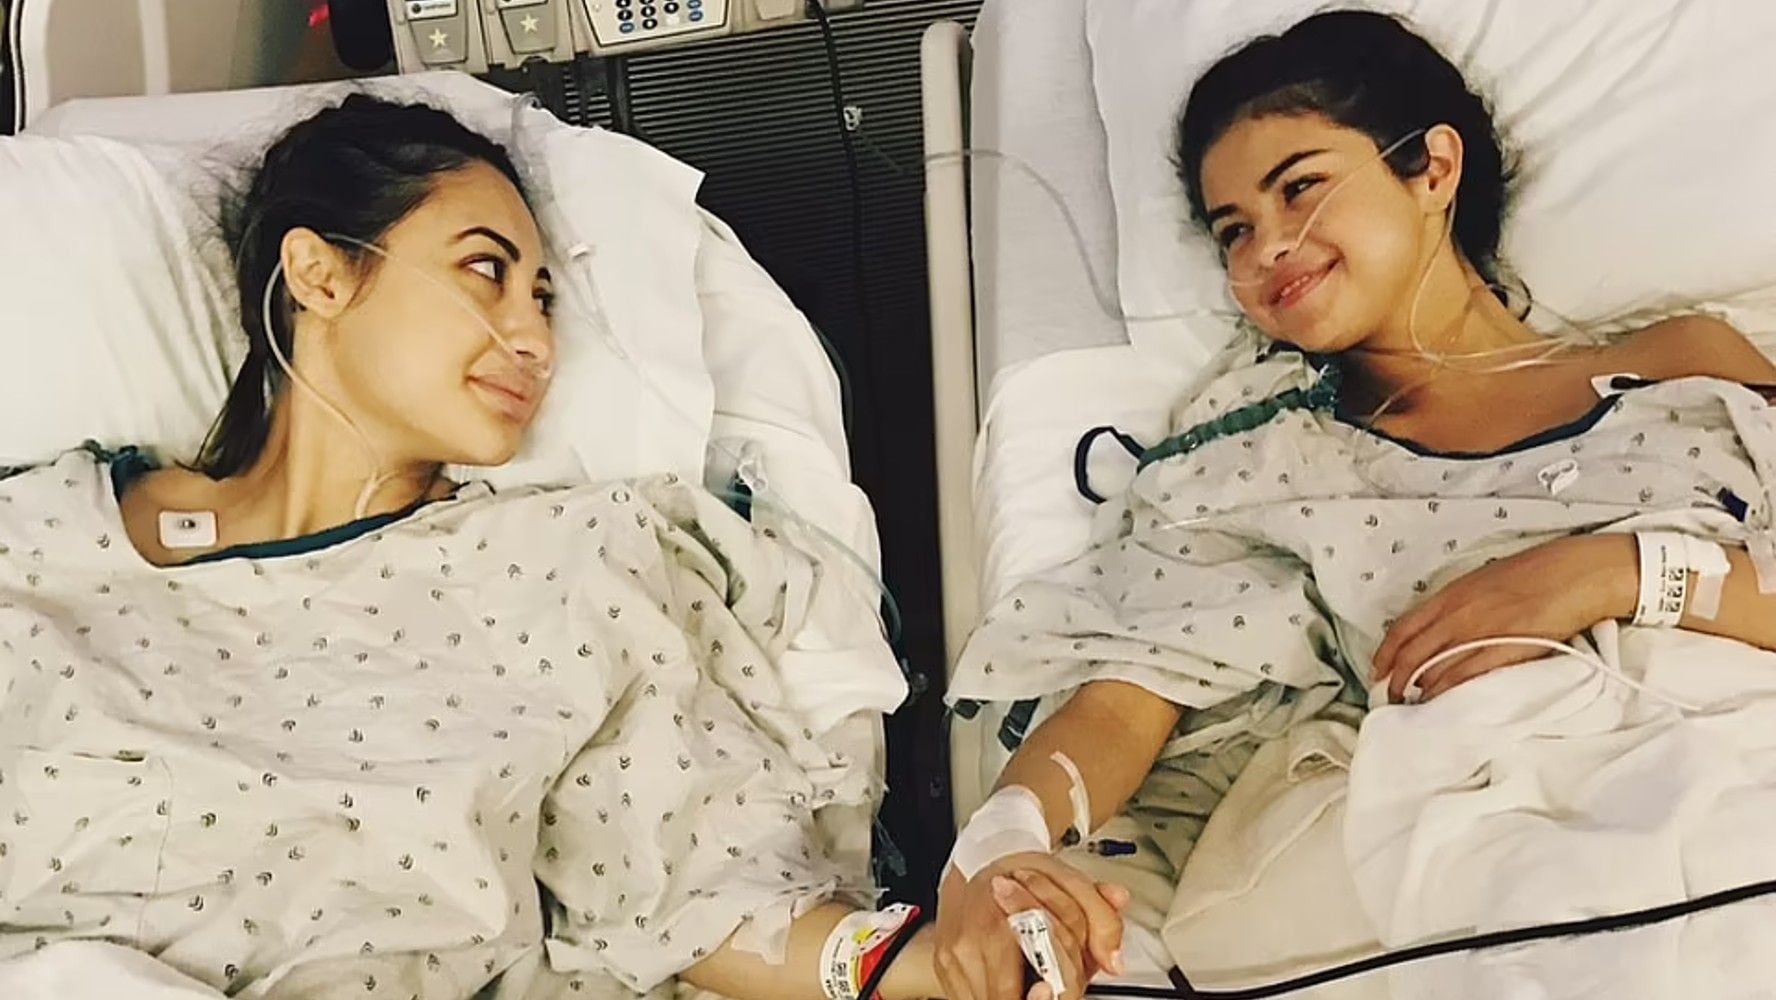 Francia Raísa le donó un riñón a Selena Gomez en 2017.